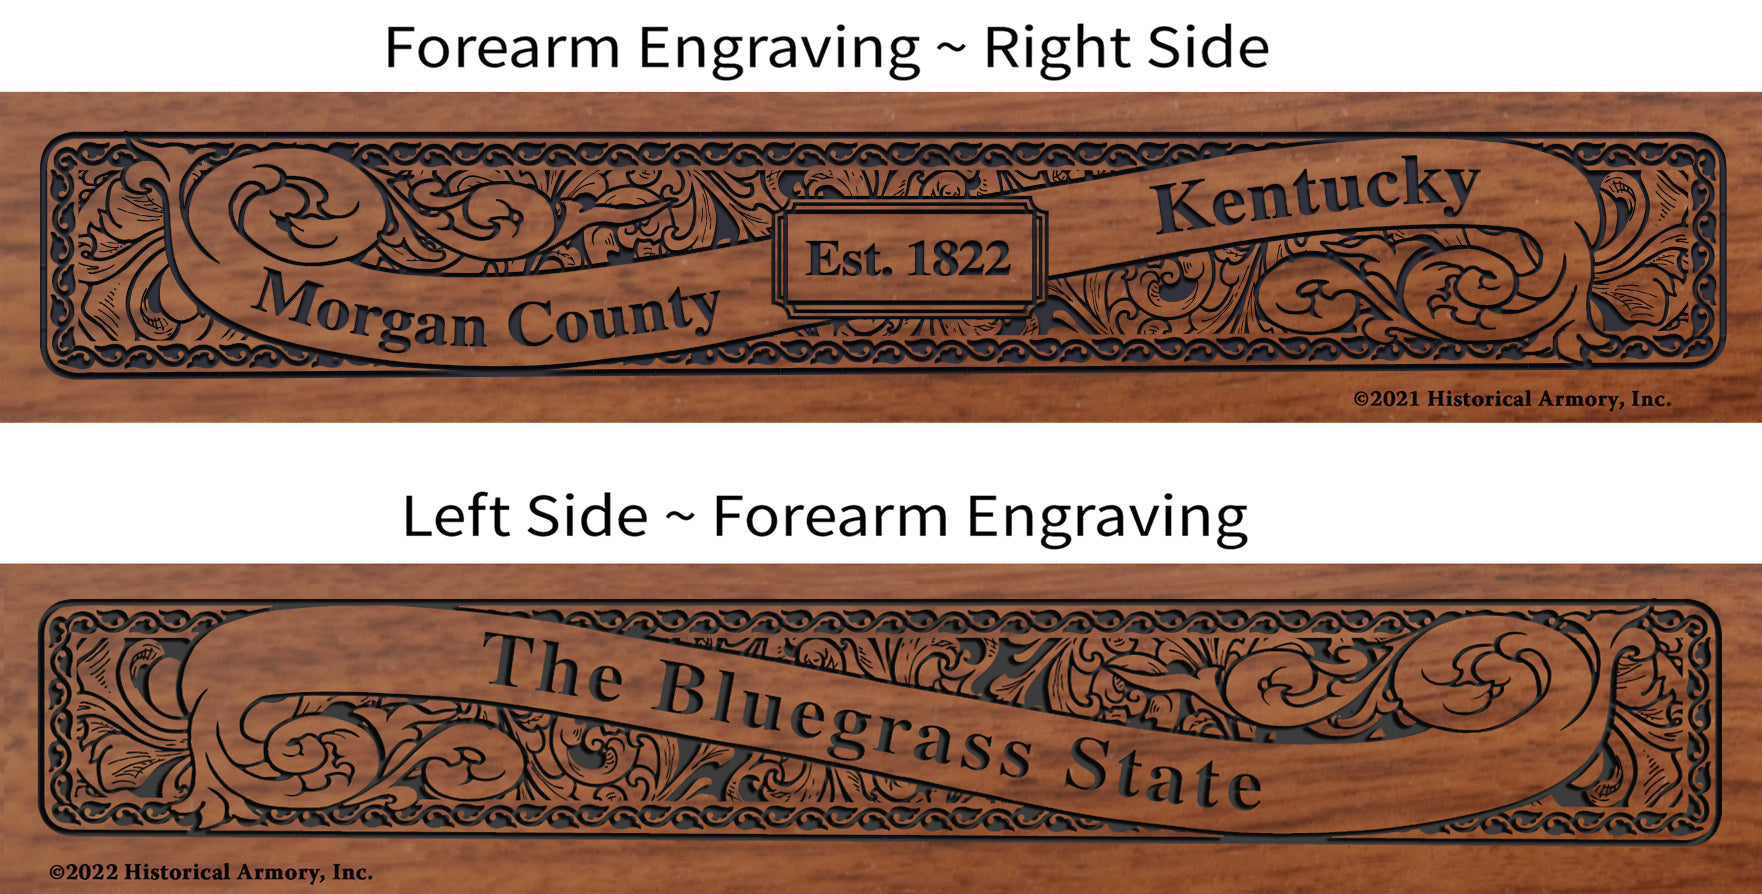 Morgan County Kentucky Engraved Rifle Forearm